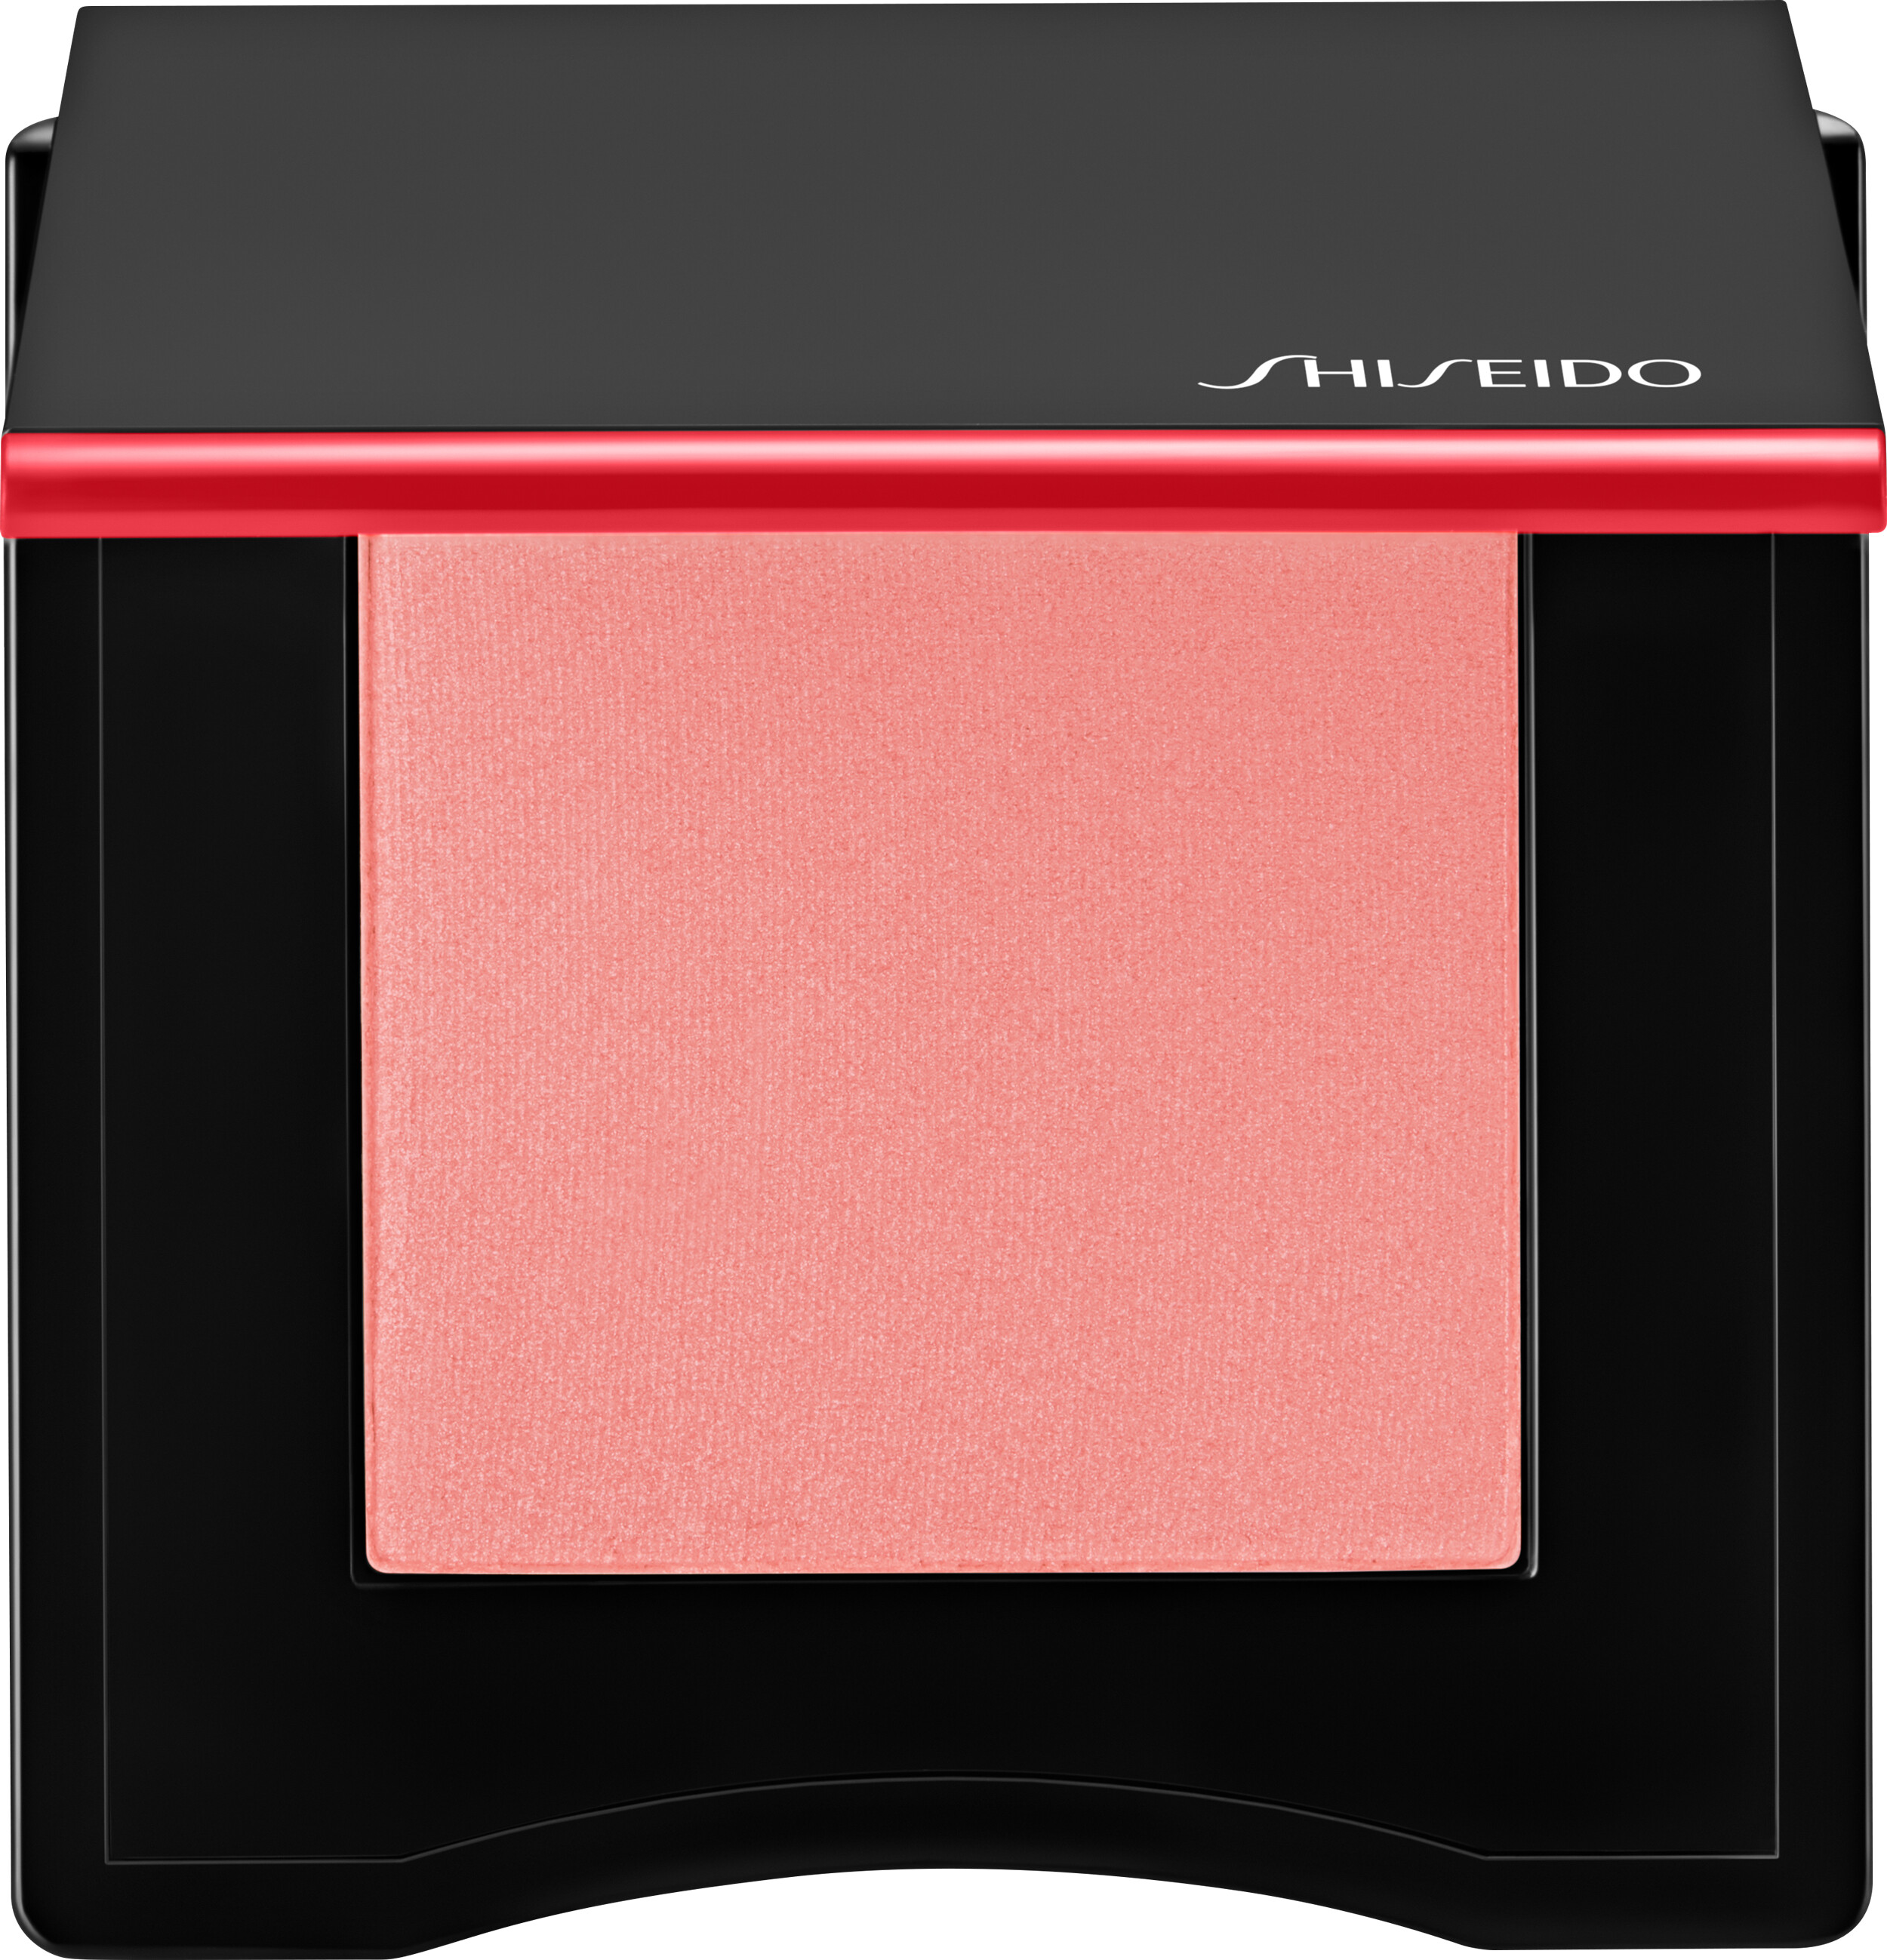 Shiseido InnerGlow CheekPowder 4g 02 - Twilight Hour